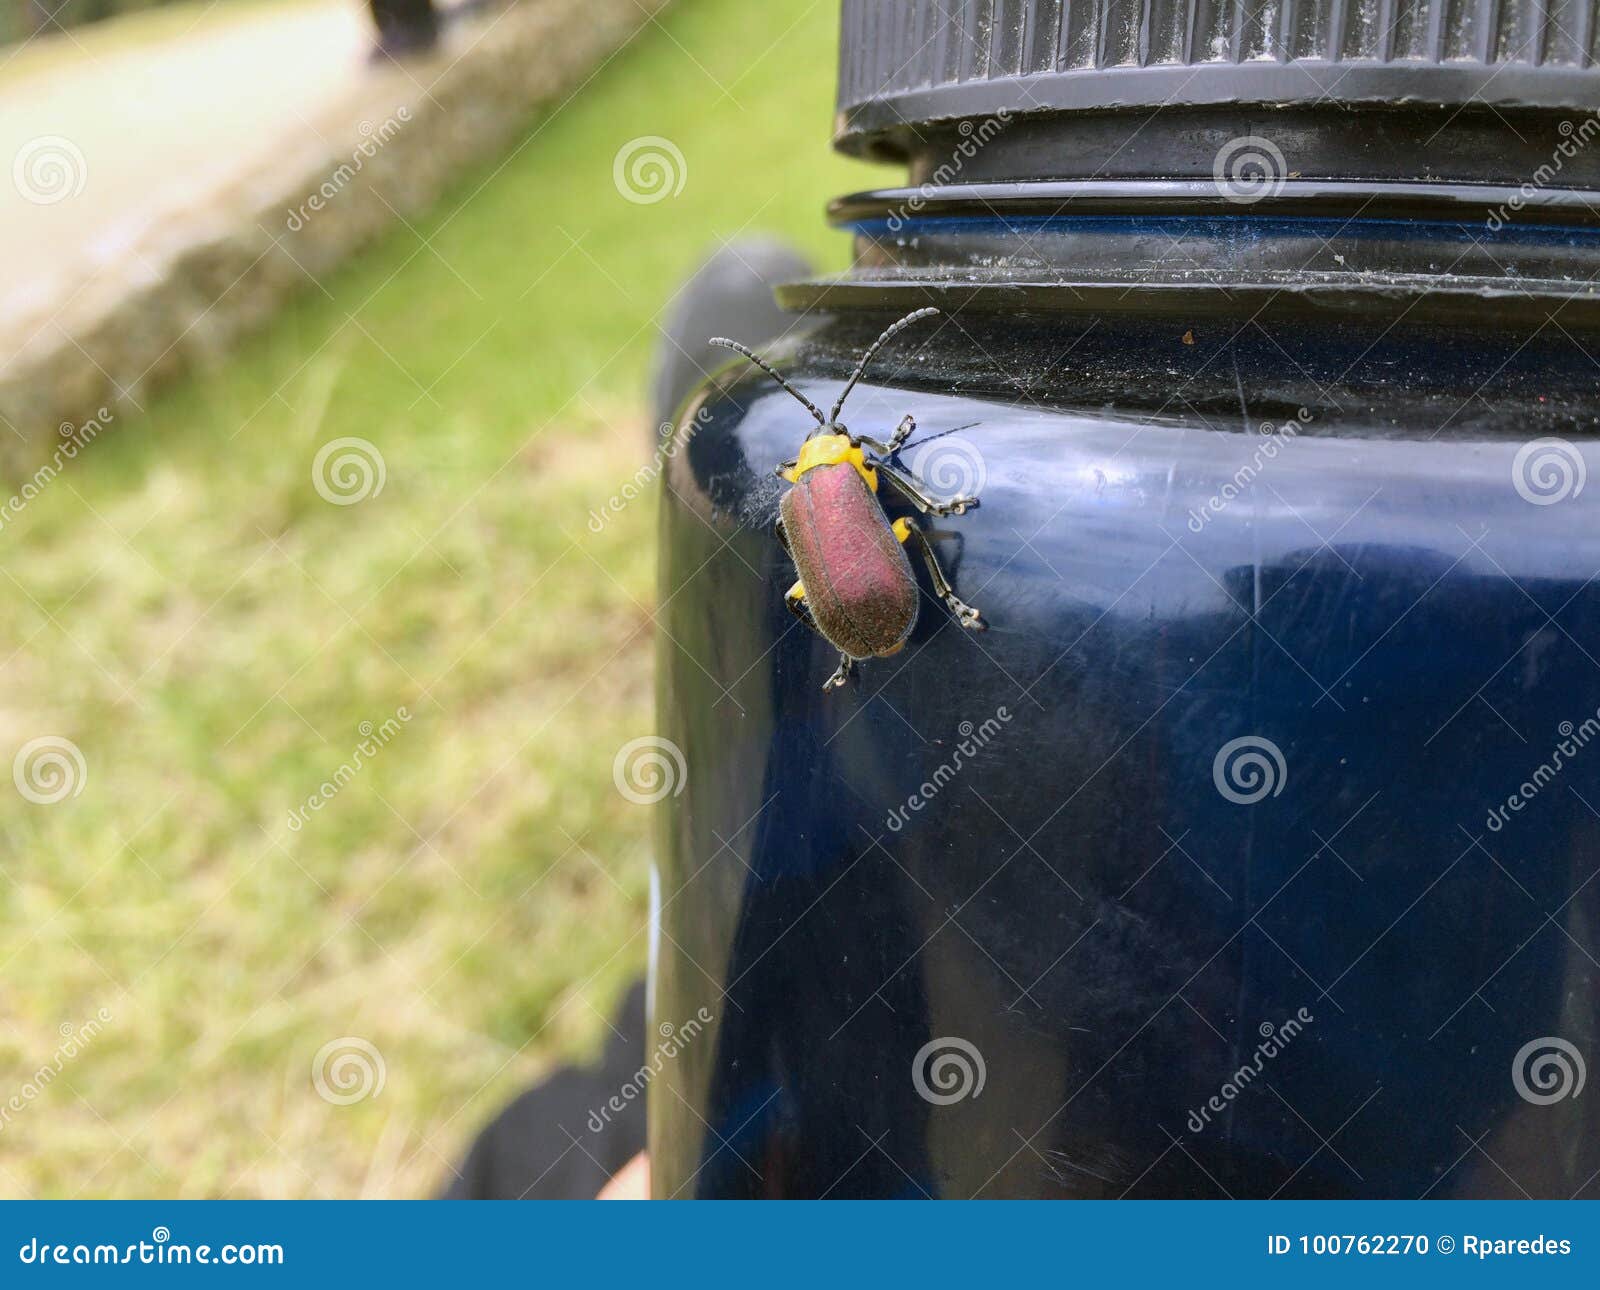 Escarabajo colorido que se coloca en una botella de agua Machu admitido Picchu - Perú